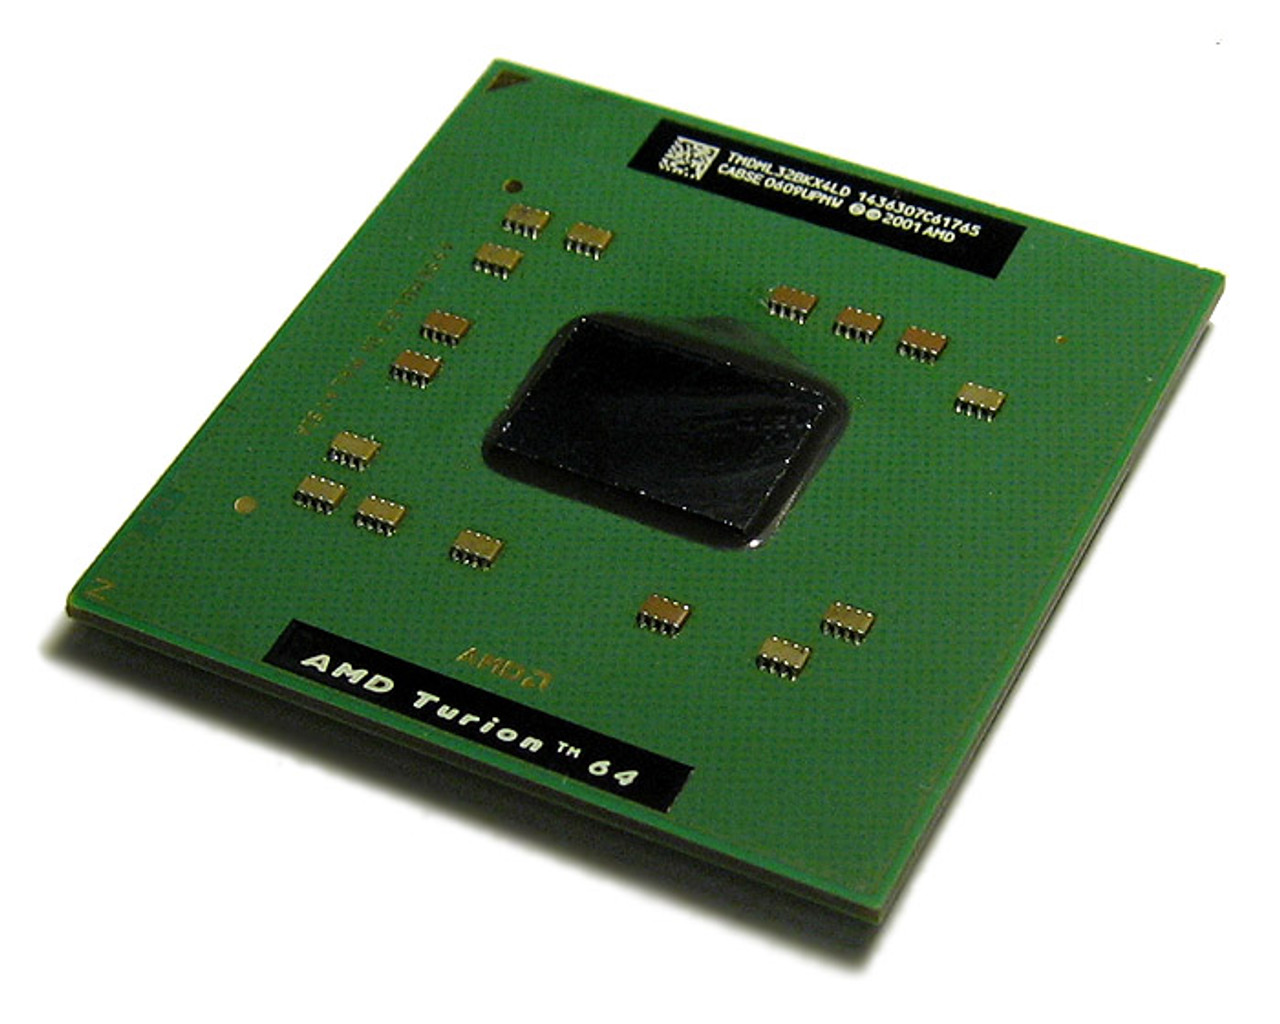 WW713 - Dell 2.00GHz 1MB L2 Cache AMD Turion 64 X2 TL-60 Dual Core Mobile Processor